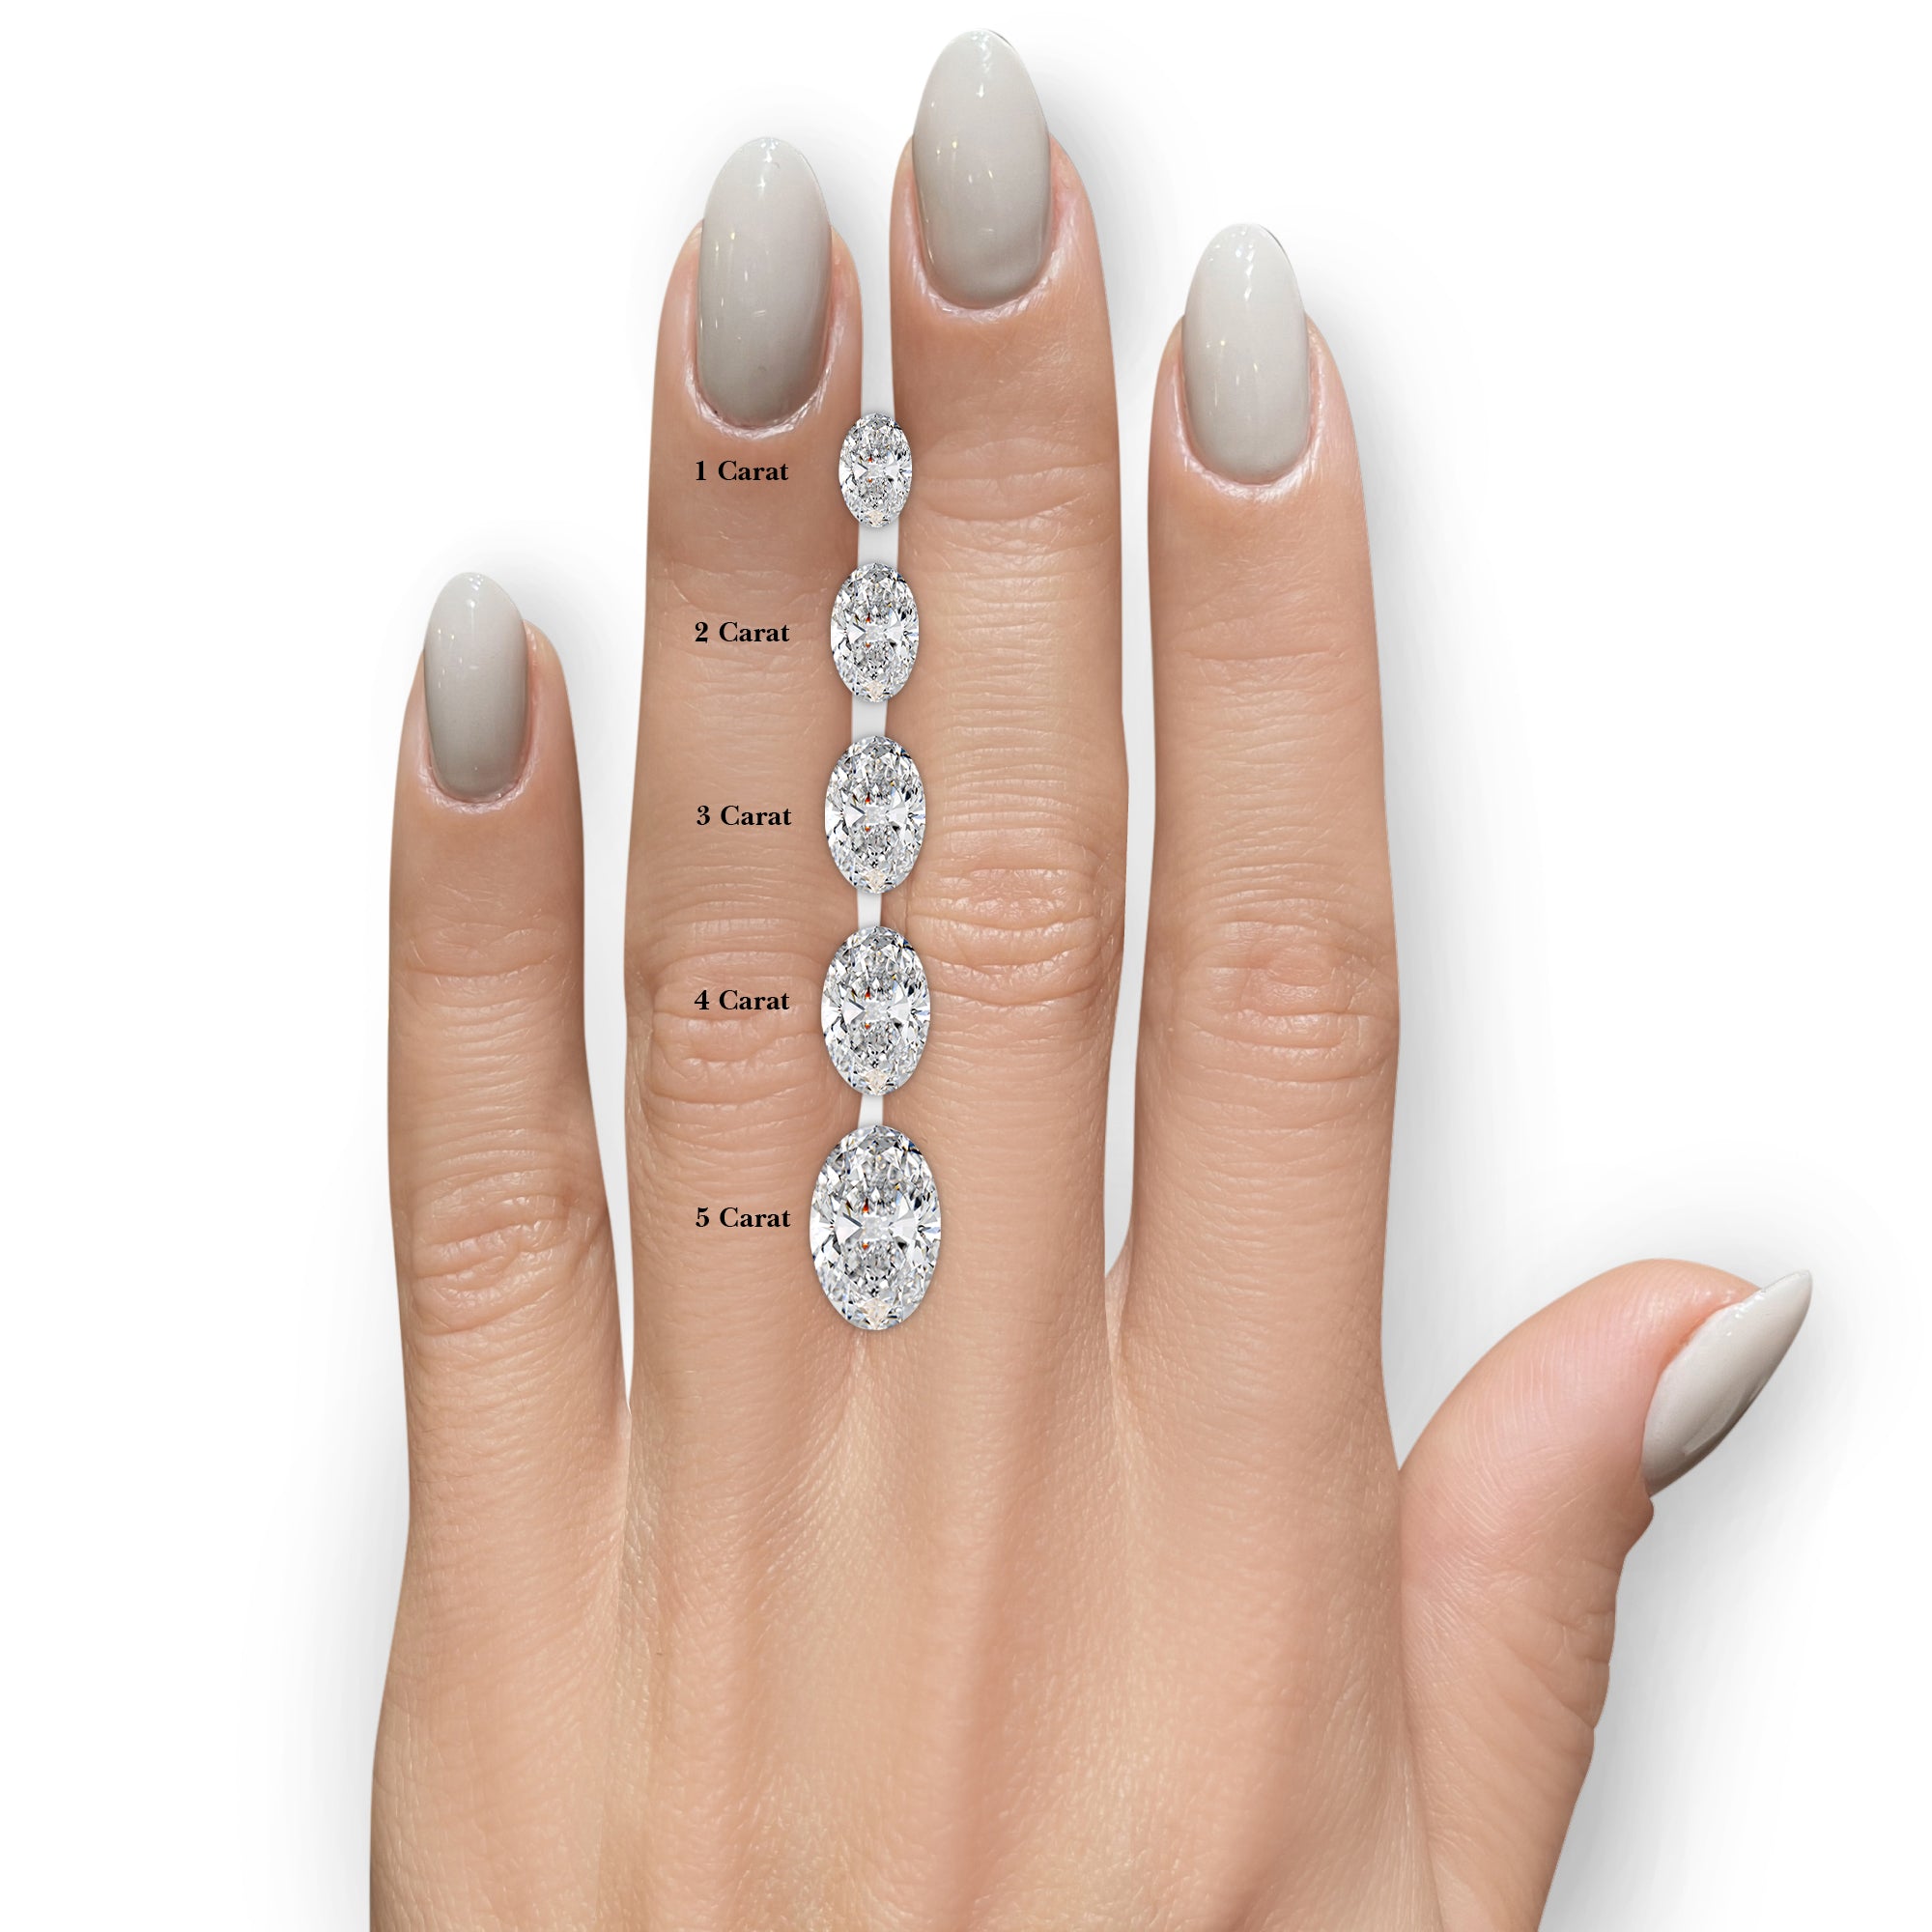 Rebecca Moissanite & Gemstones Ring -14K White Gold